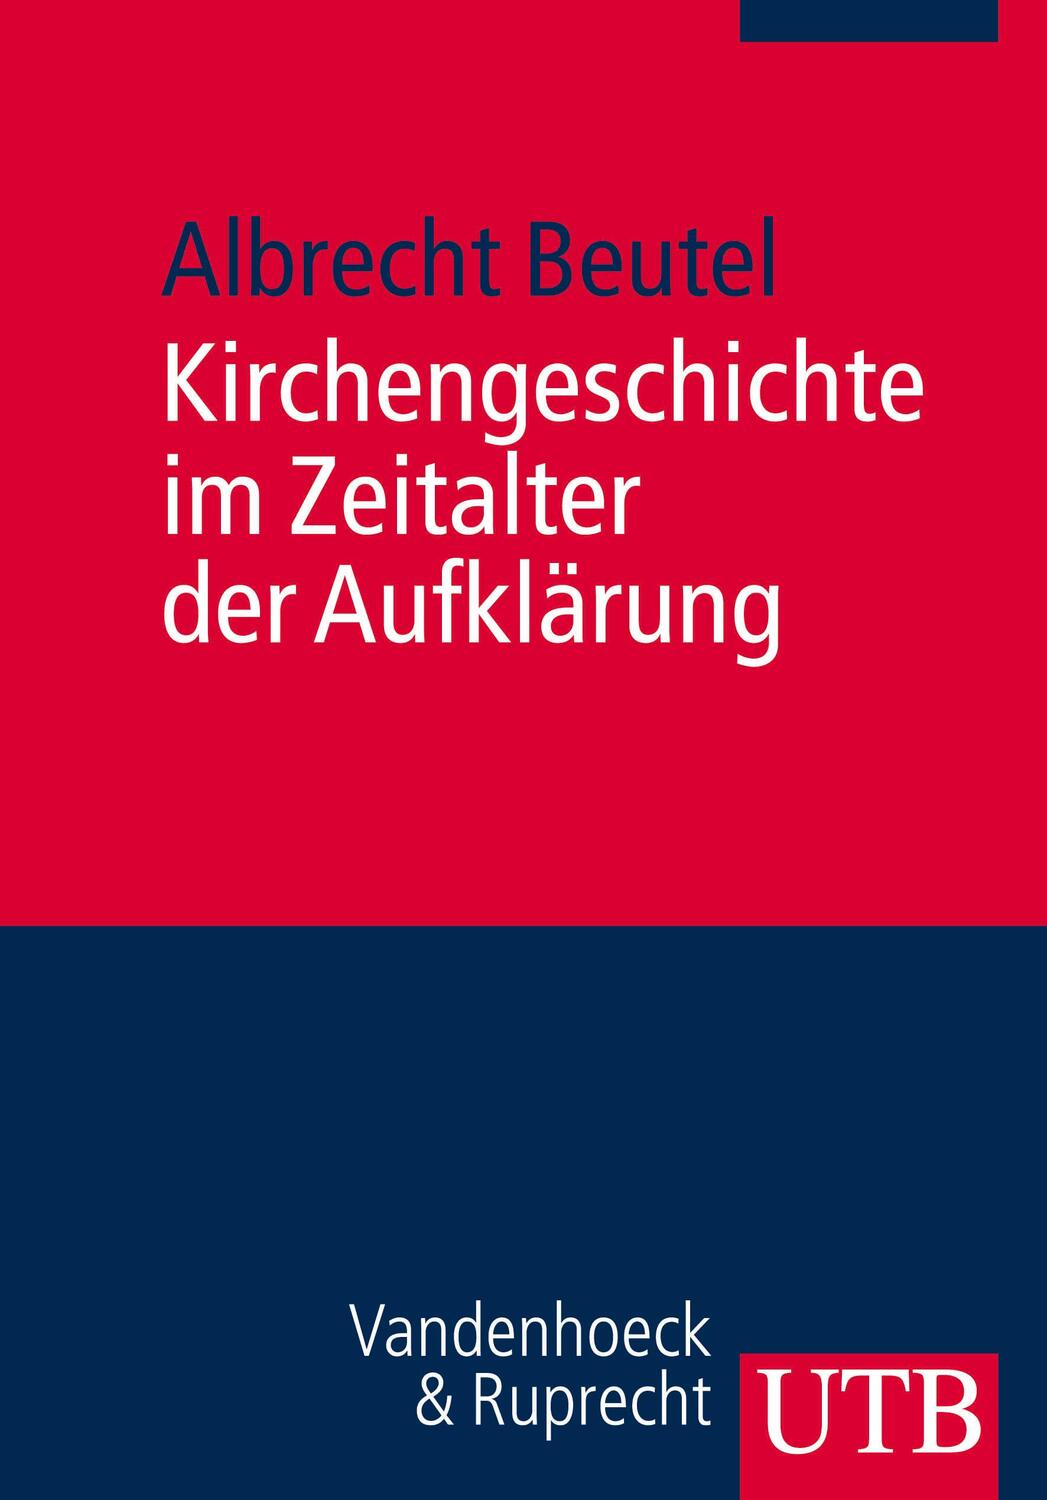 Kirchengeschichte im Zeitalter der Aufklärung - Beutel, Albrecht